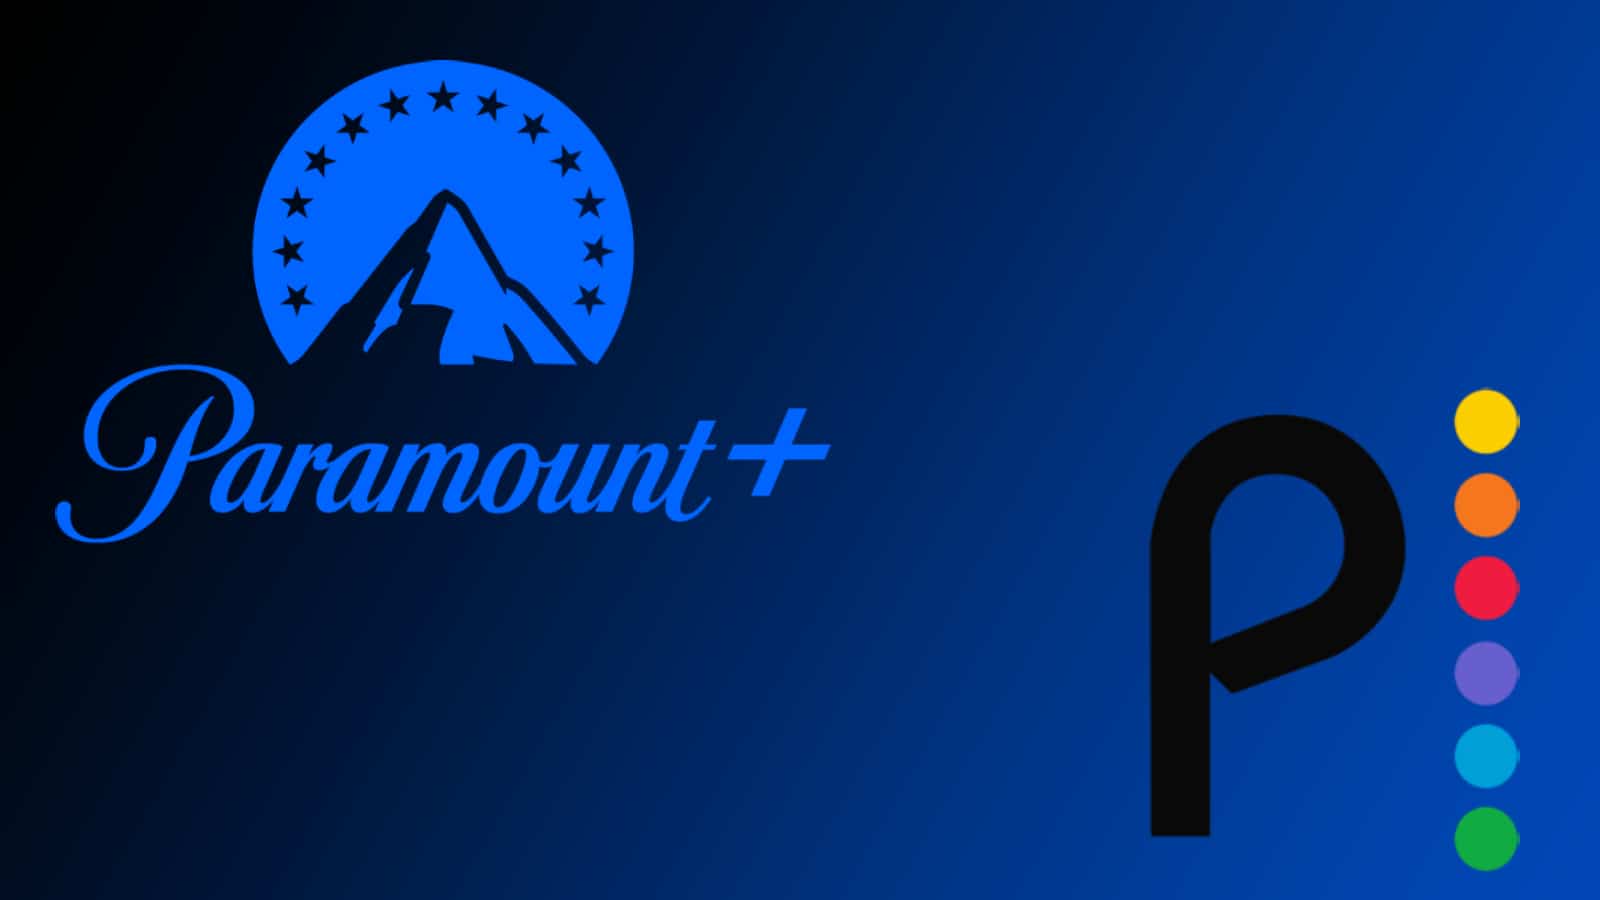 Una fusión de Paramount+ y Peacock podría darle a Netflix una competencia por su dinero